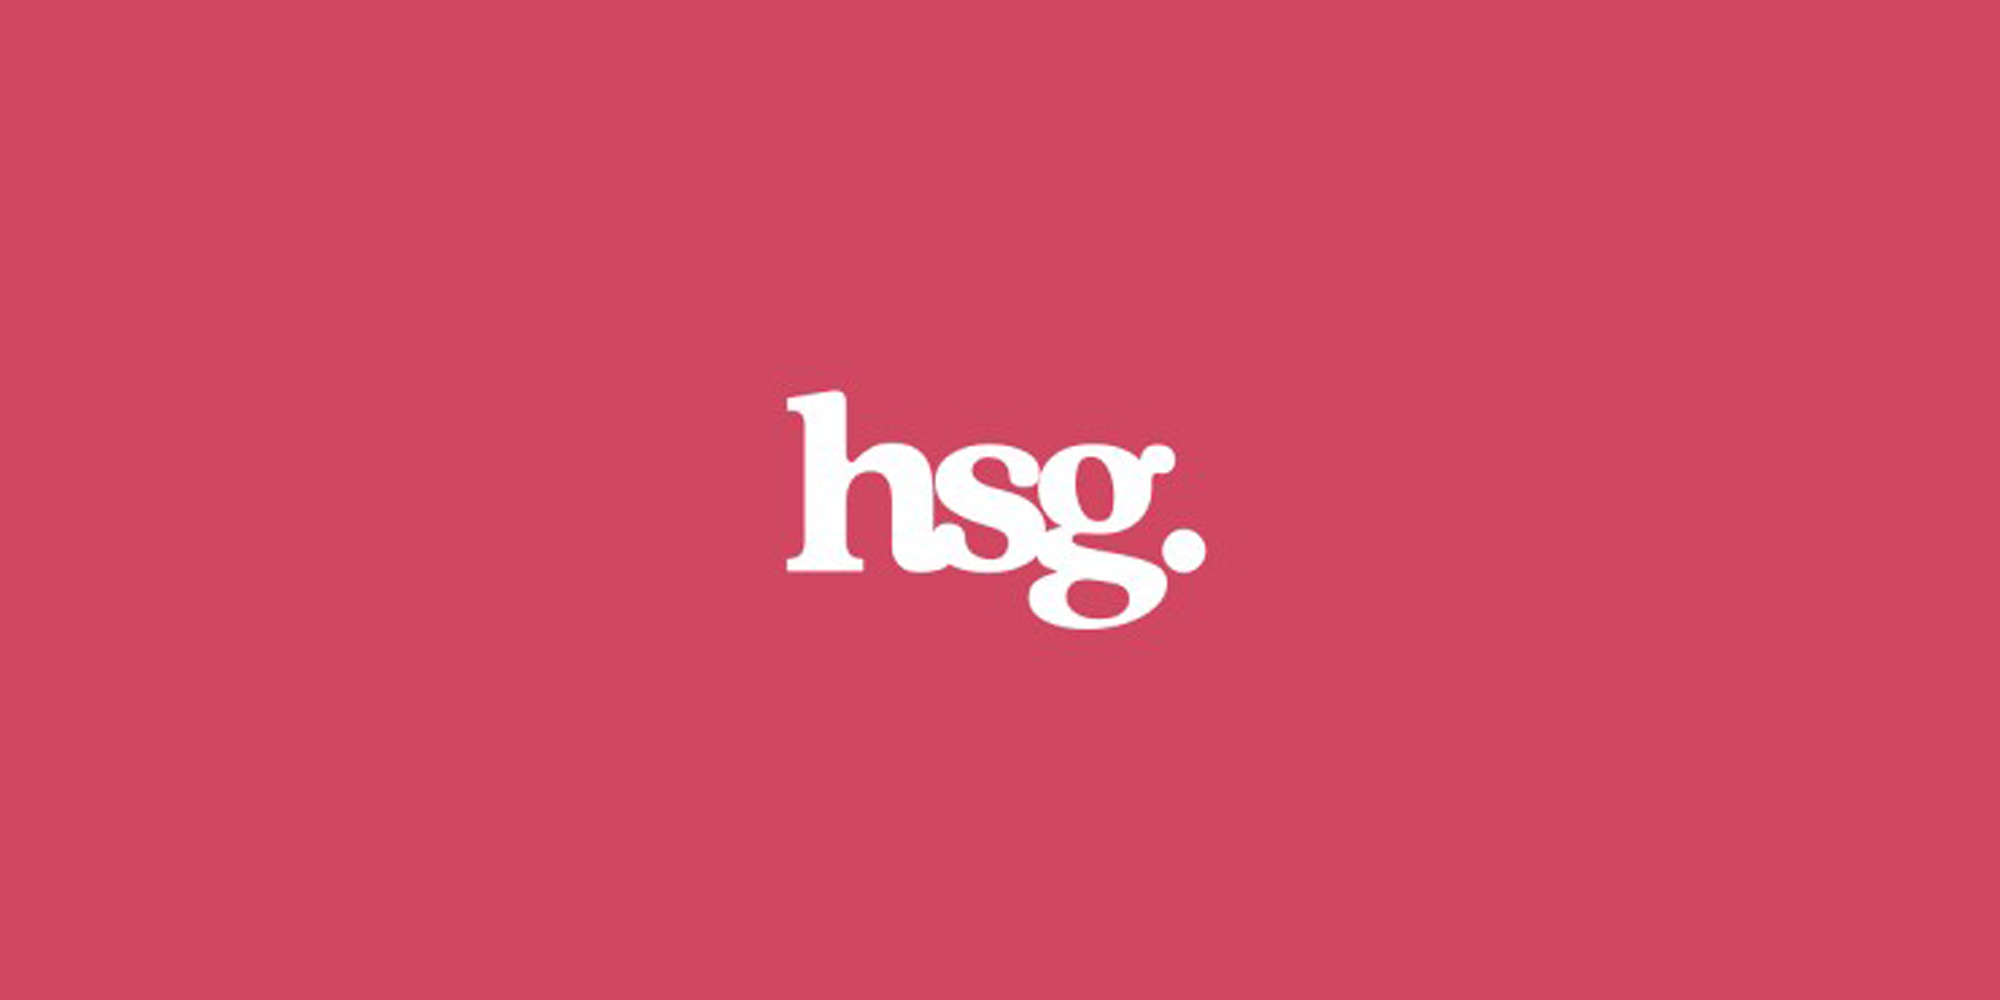 HSG Advisory